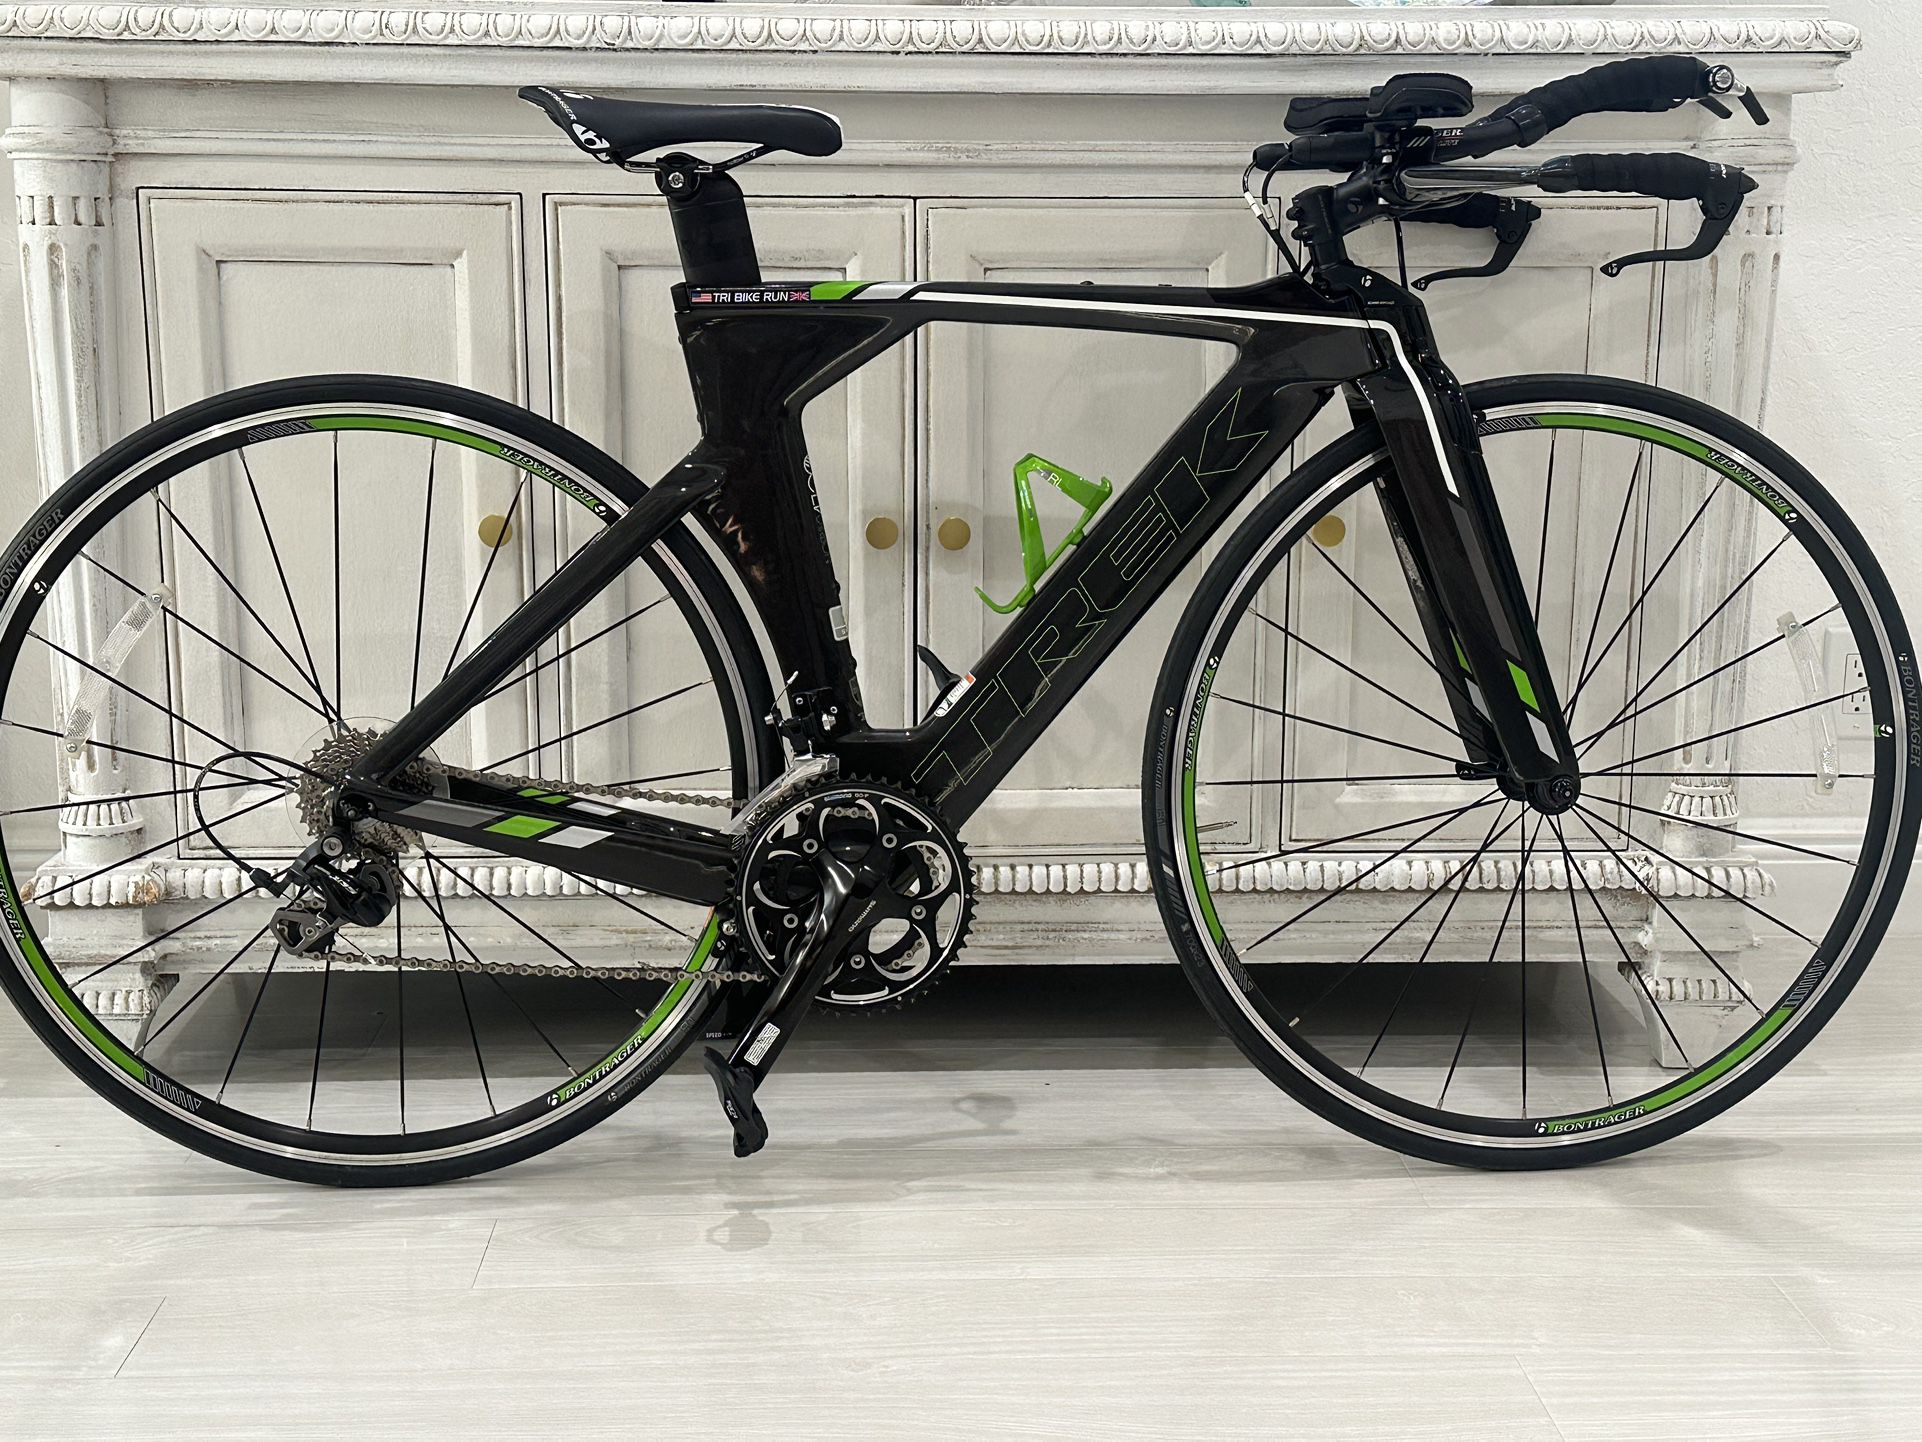 Trek Speed Concept Seven Series Rd. Bike, S Frame Carbon Fiber brand new bike